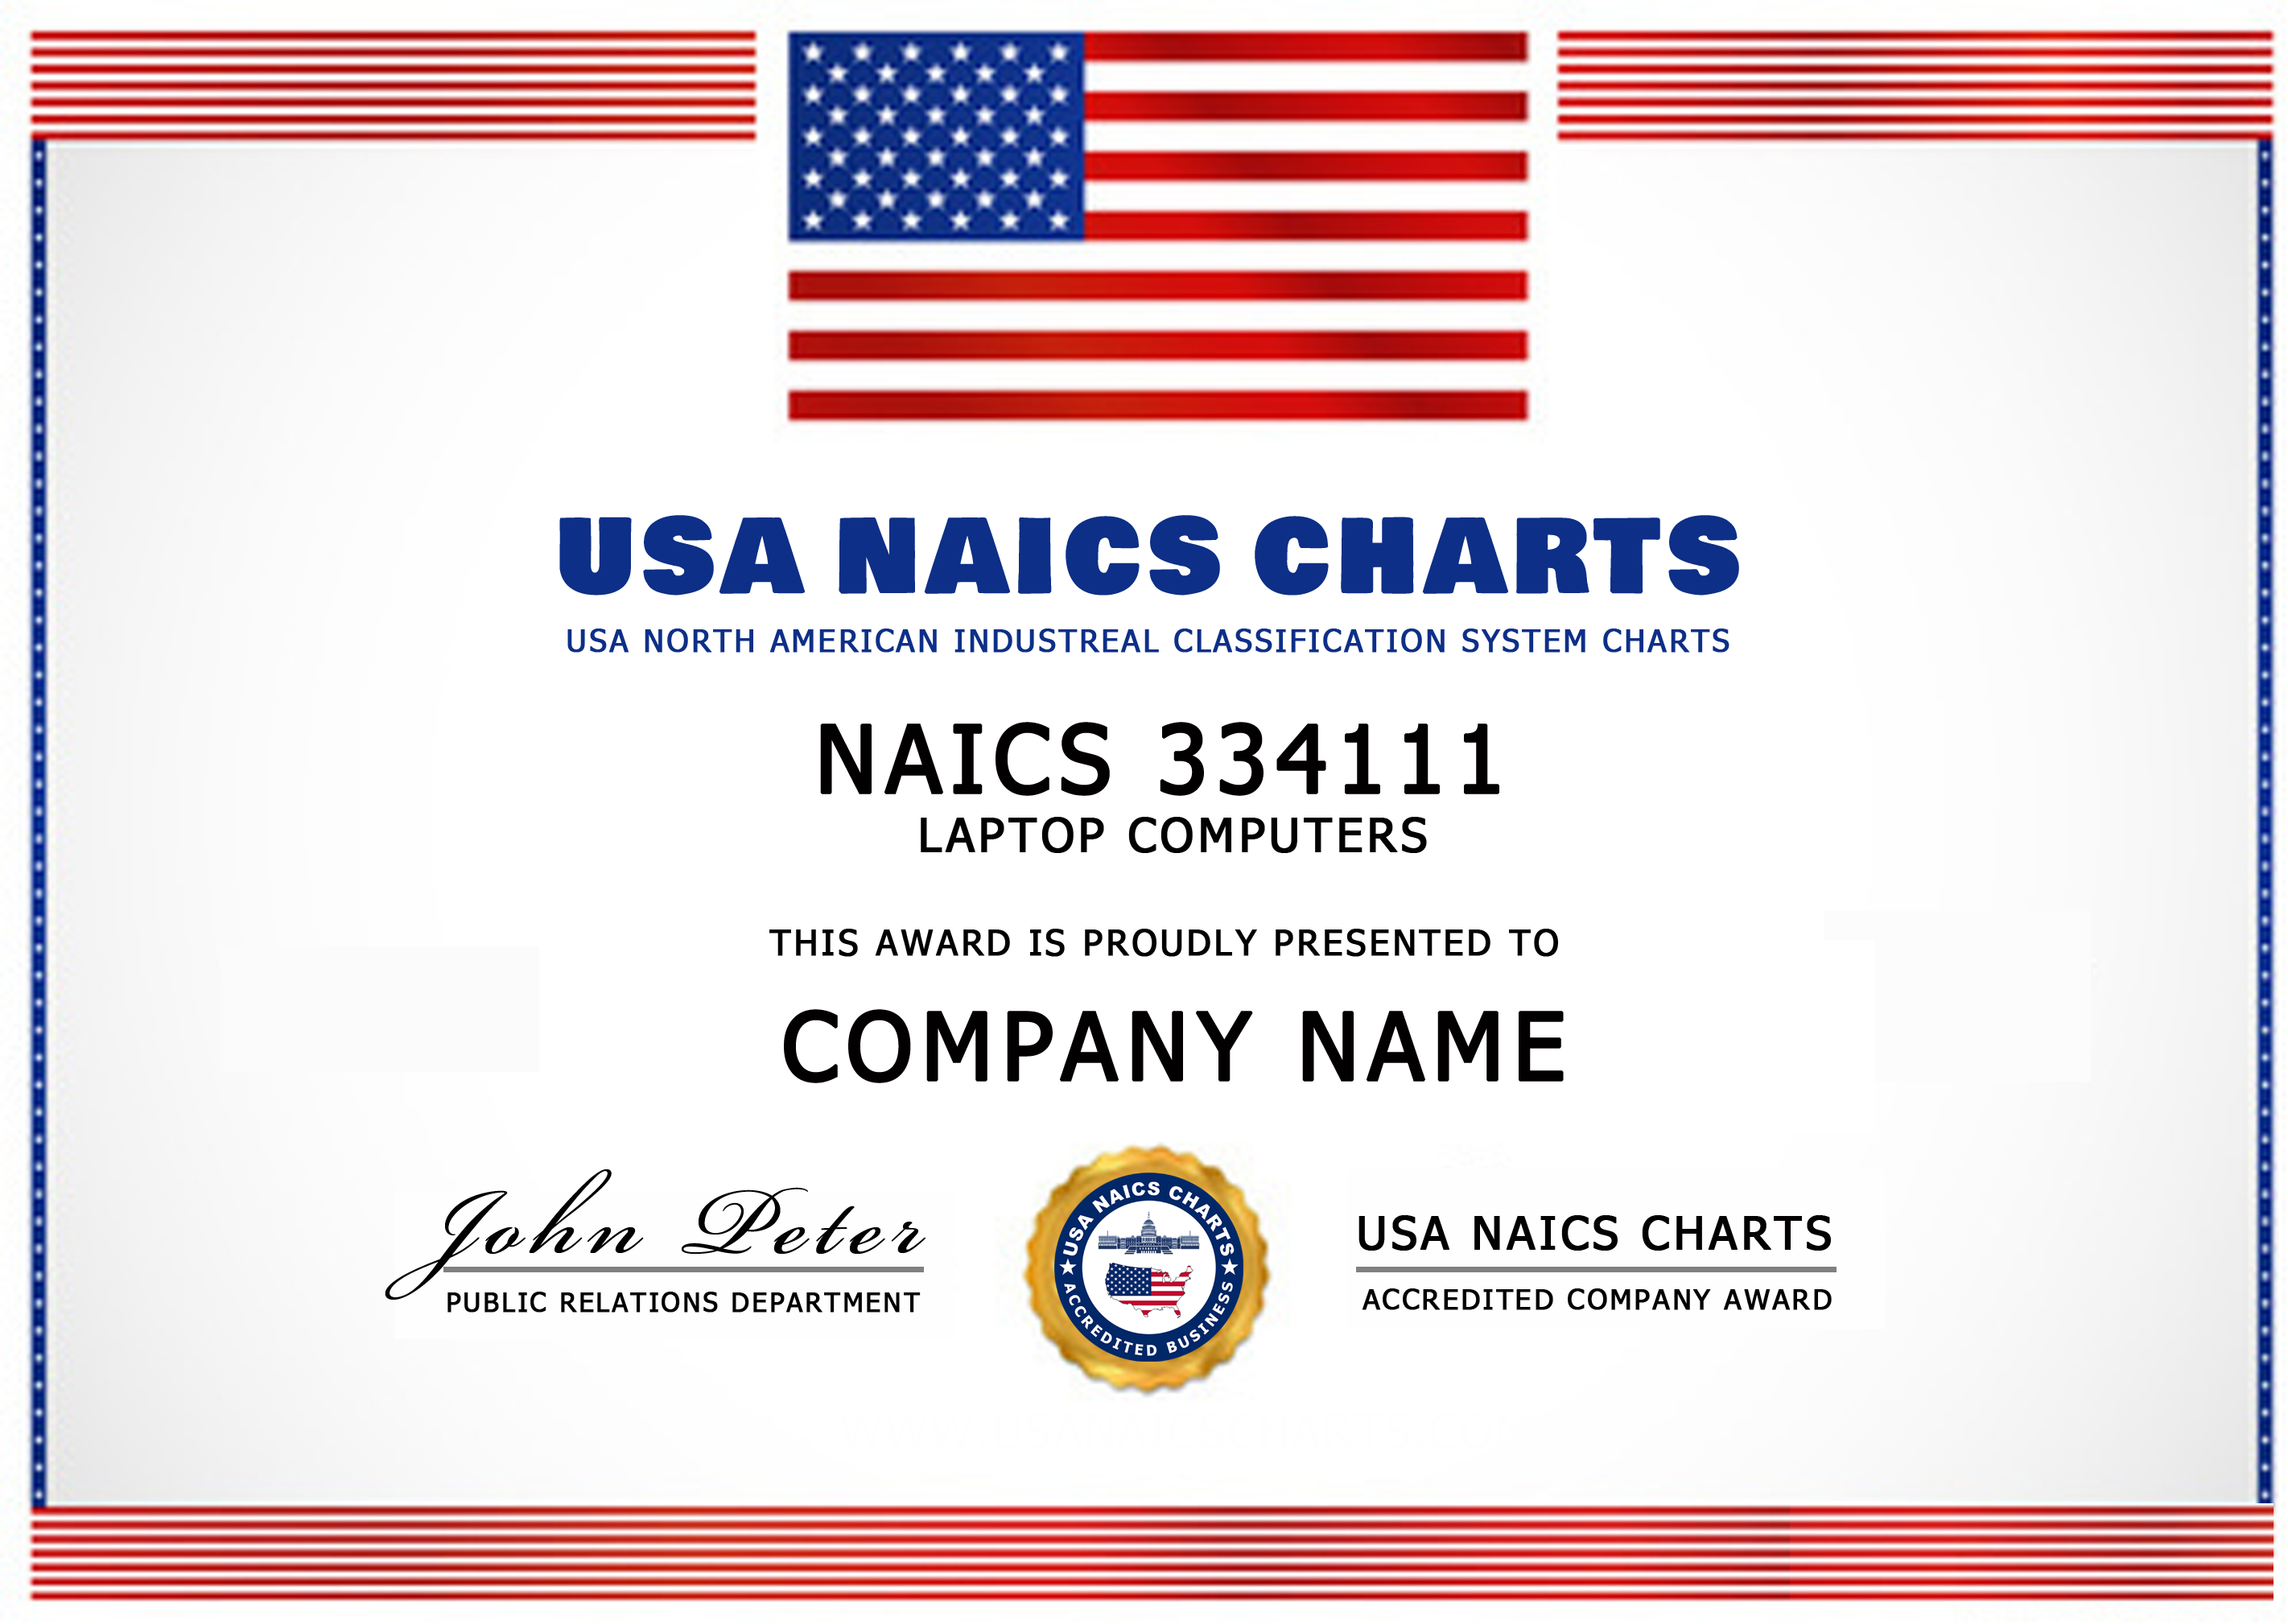 USA NAICS Code Awards 4